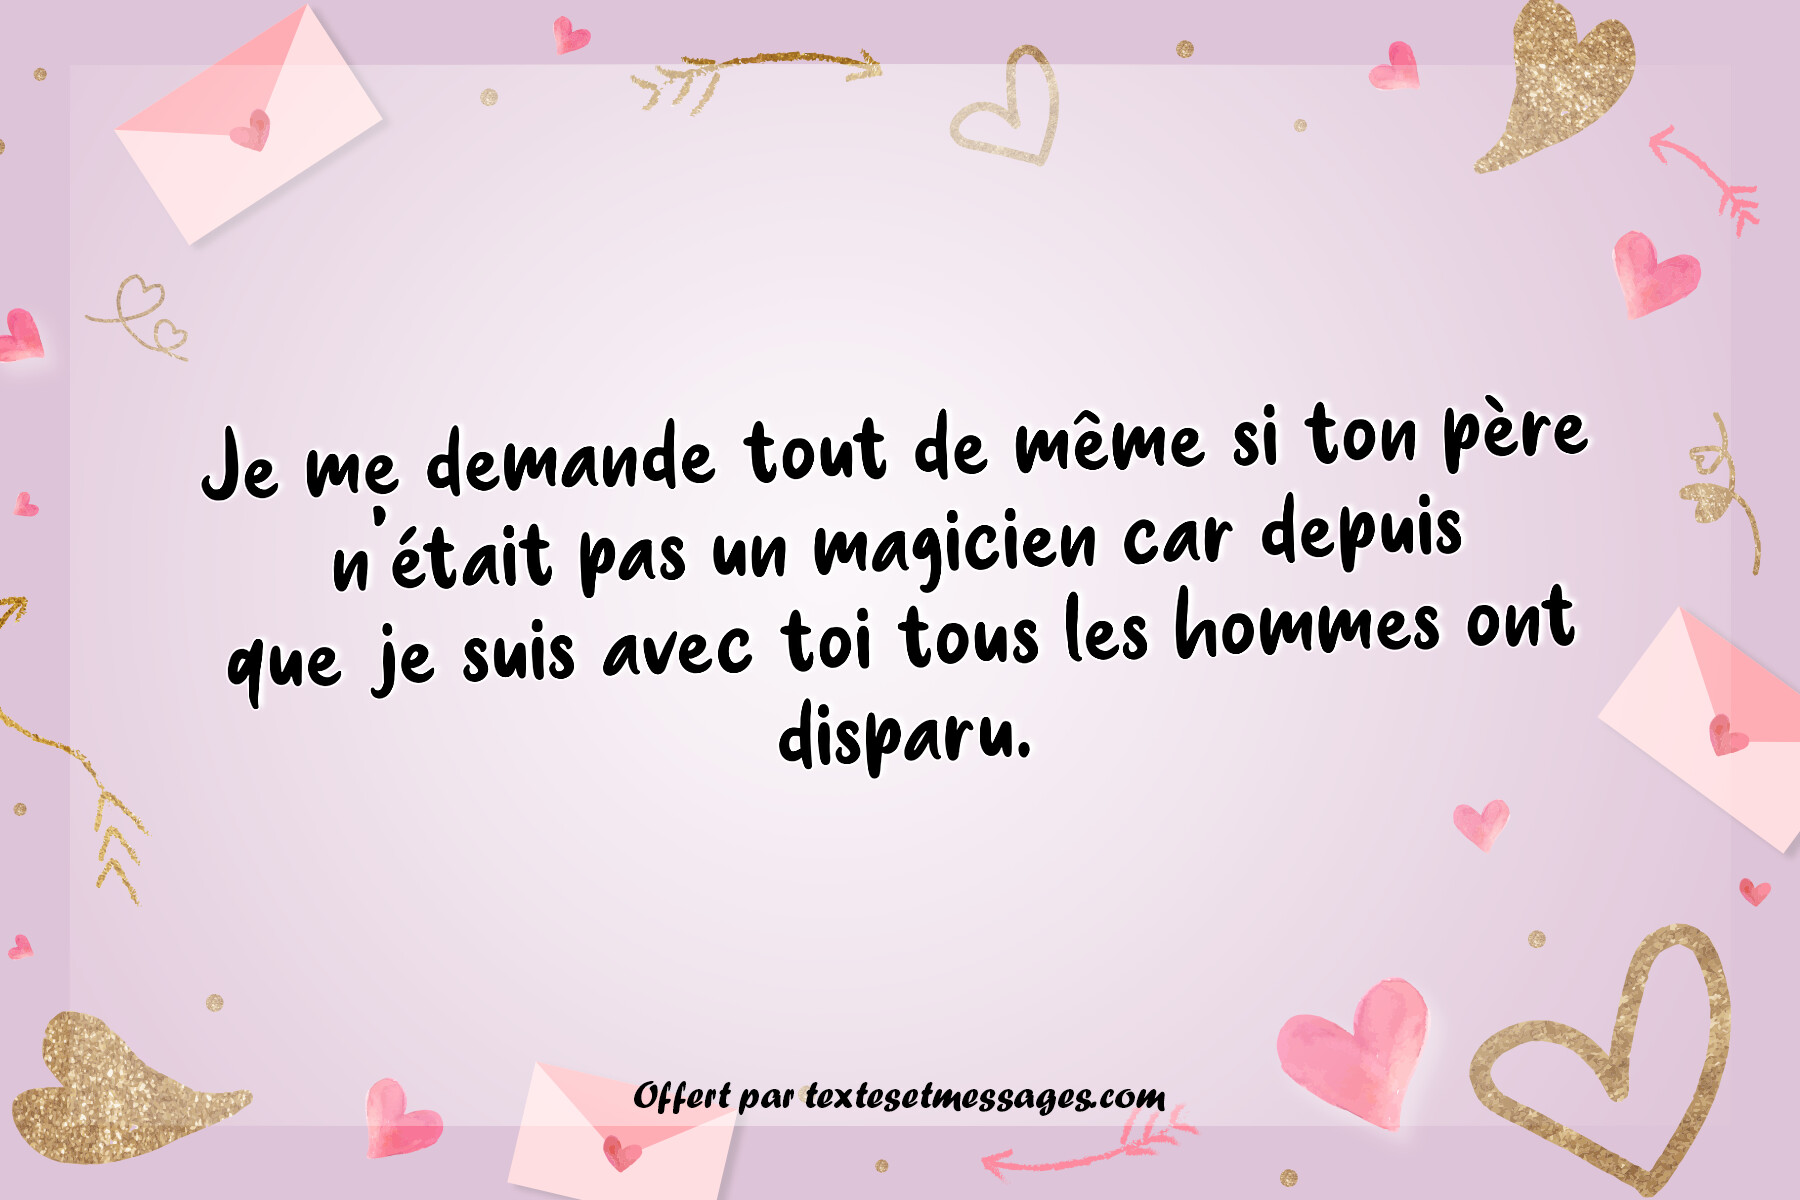 Message d'amour drôle / Humoristique n°10